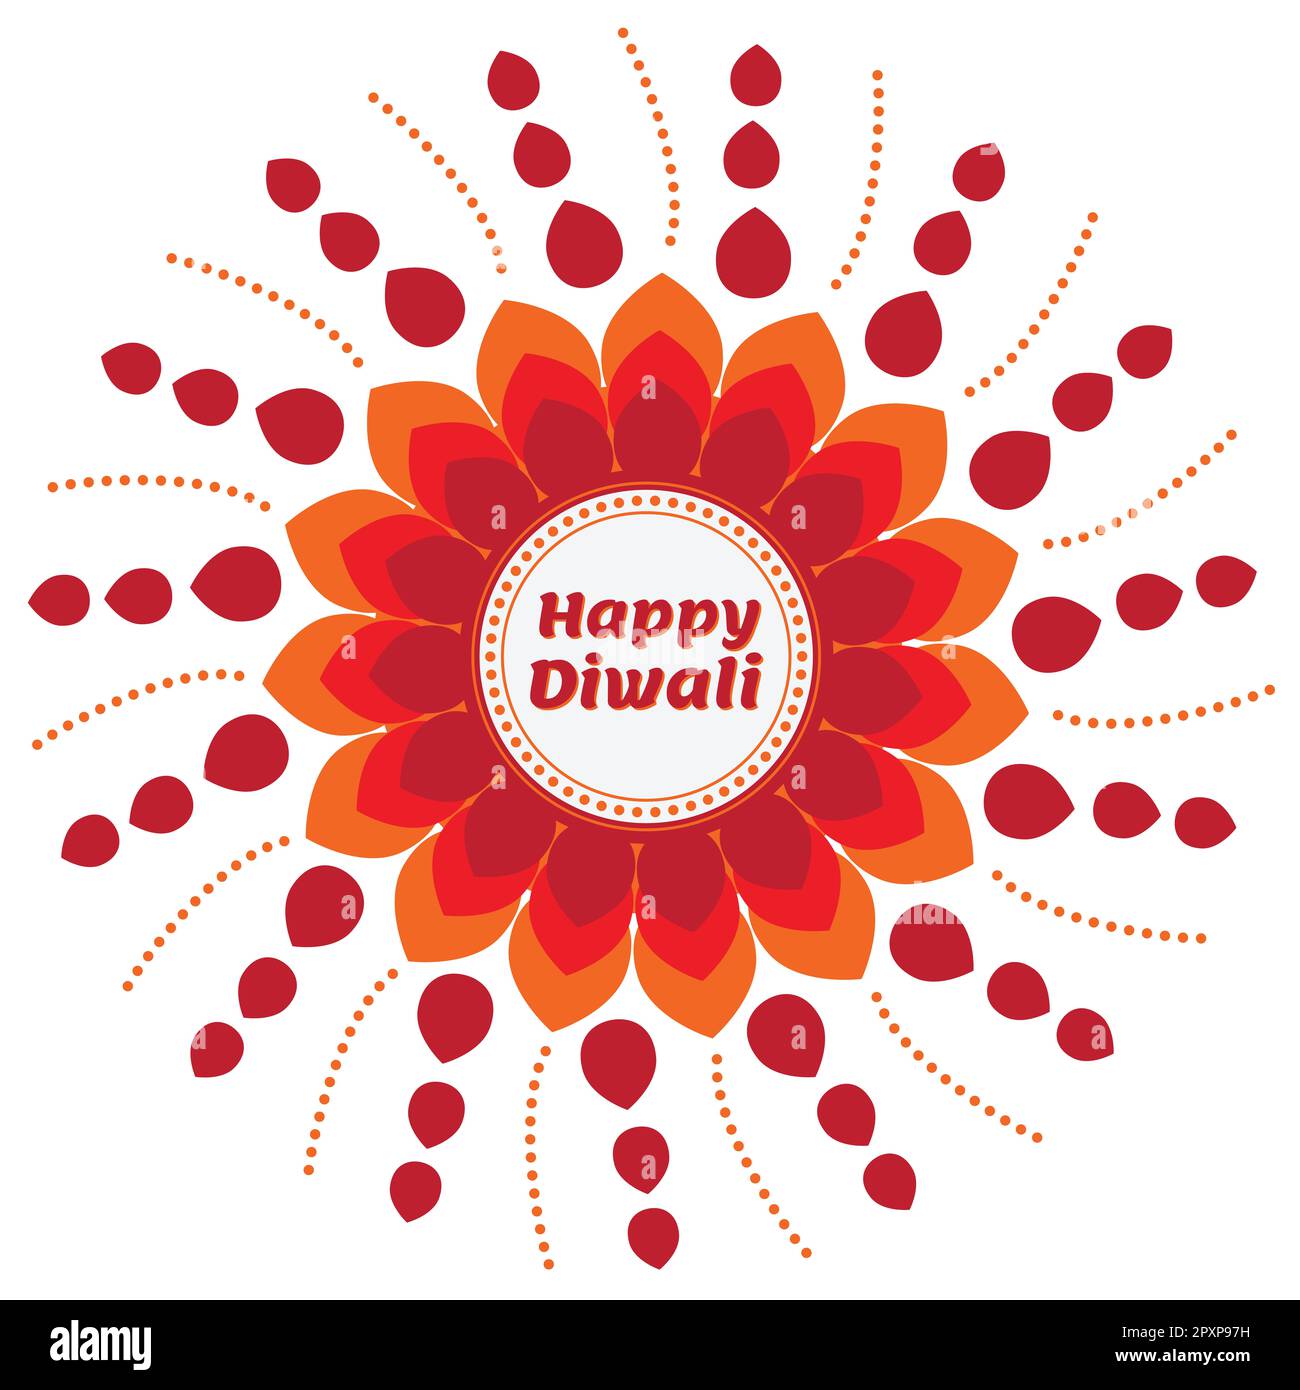 Glückliche Diwali-Kunst Floral, glückliche Diwali-Vektor-Kunst, Diwali-Vektor-Illustration. Erleben Sie das Wesen von Diwali mit dieser atemberaubenden Diwali-Illustration Stockfoto